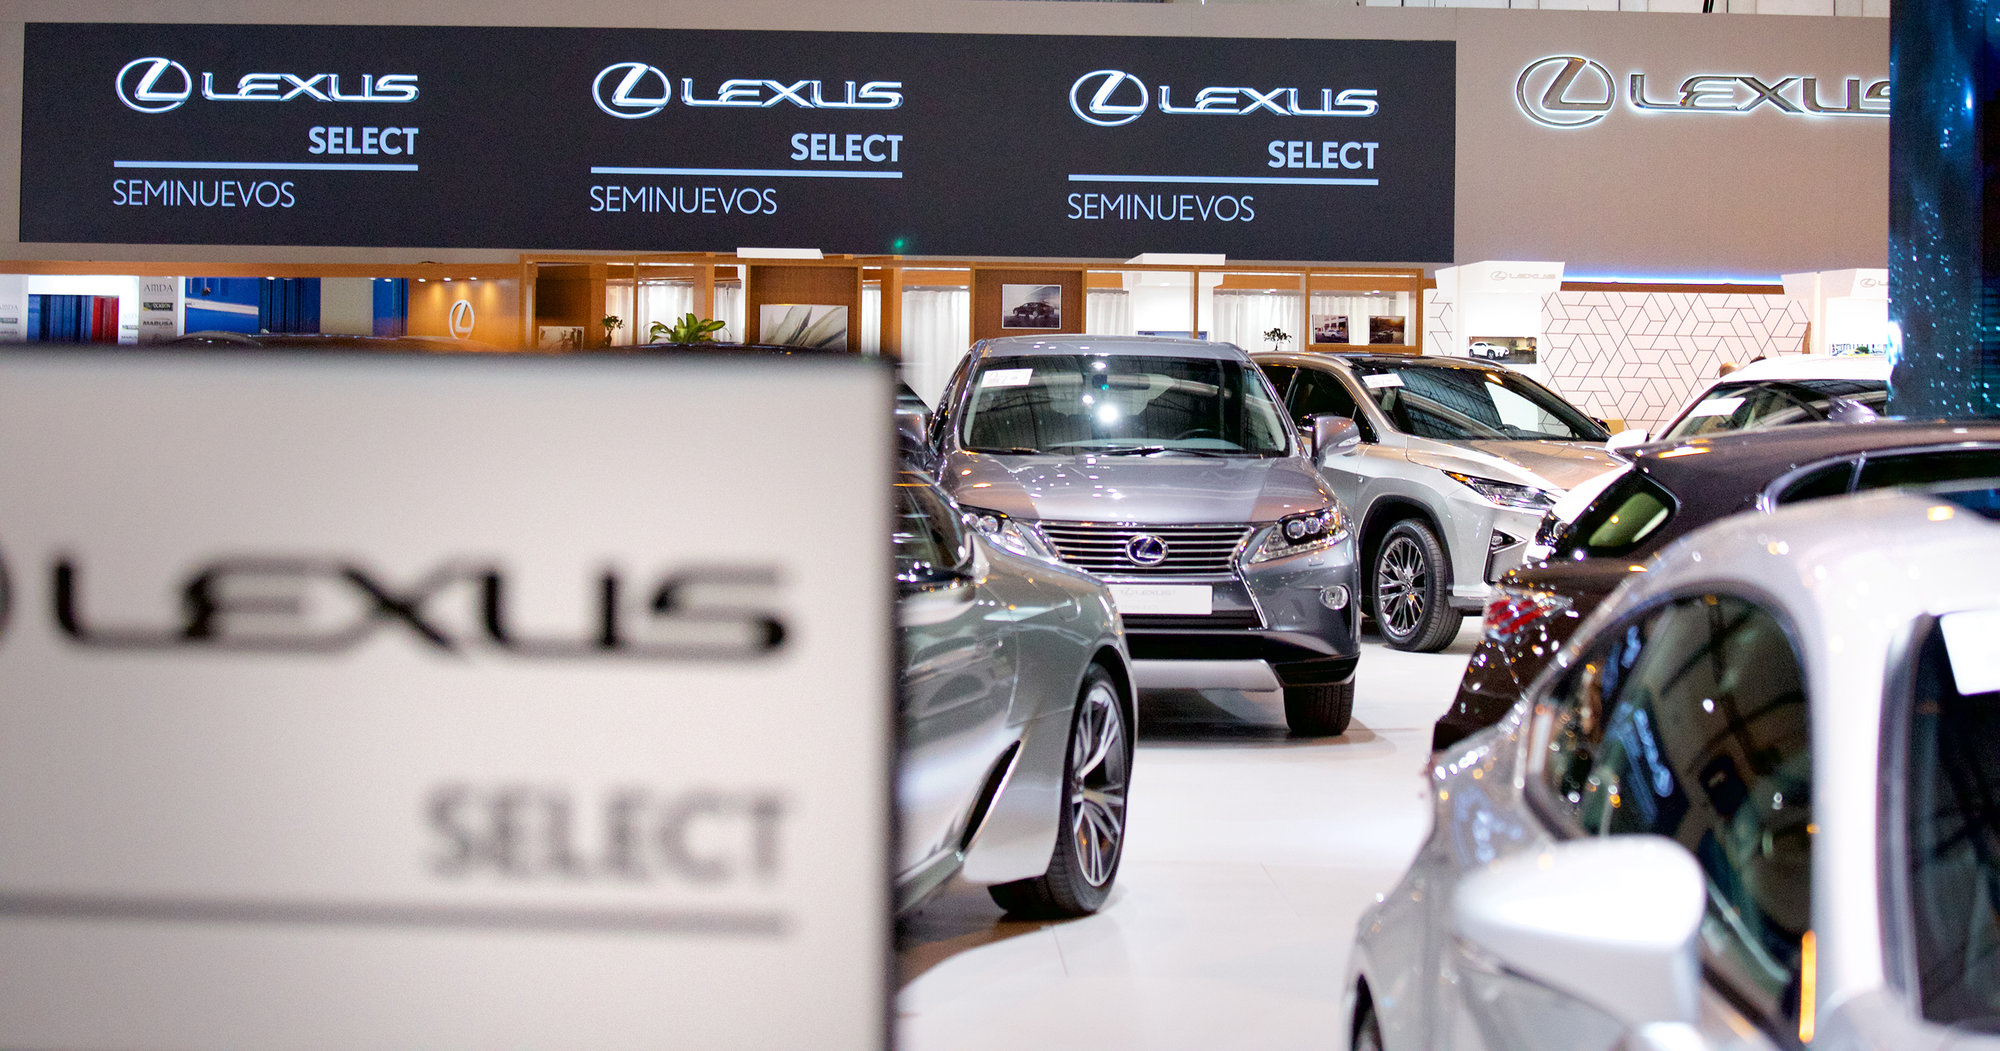 Lexus muestra su Gama Híbrida en el Salón del Vehículo de Ocasión de Madrid 2018